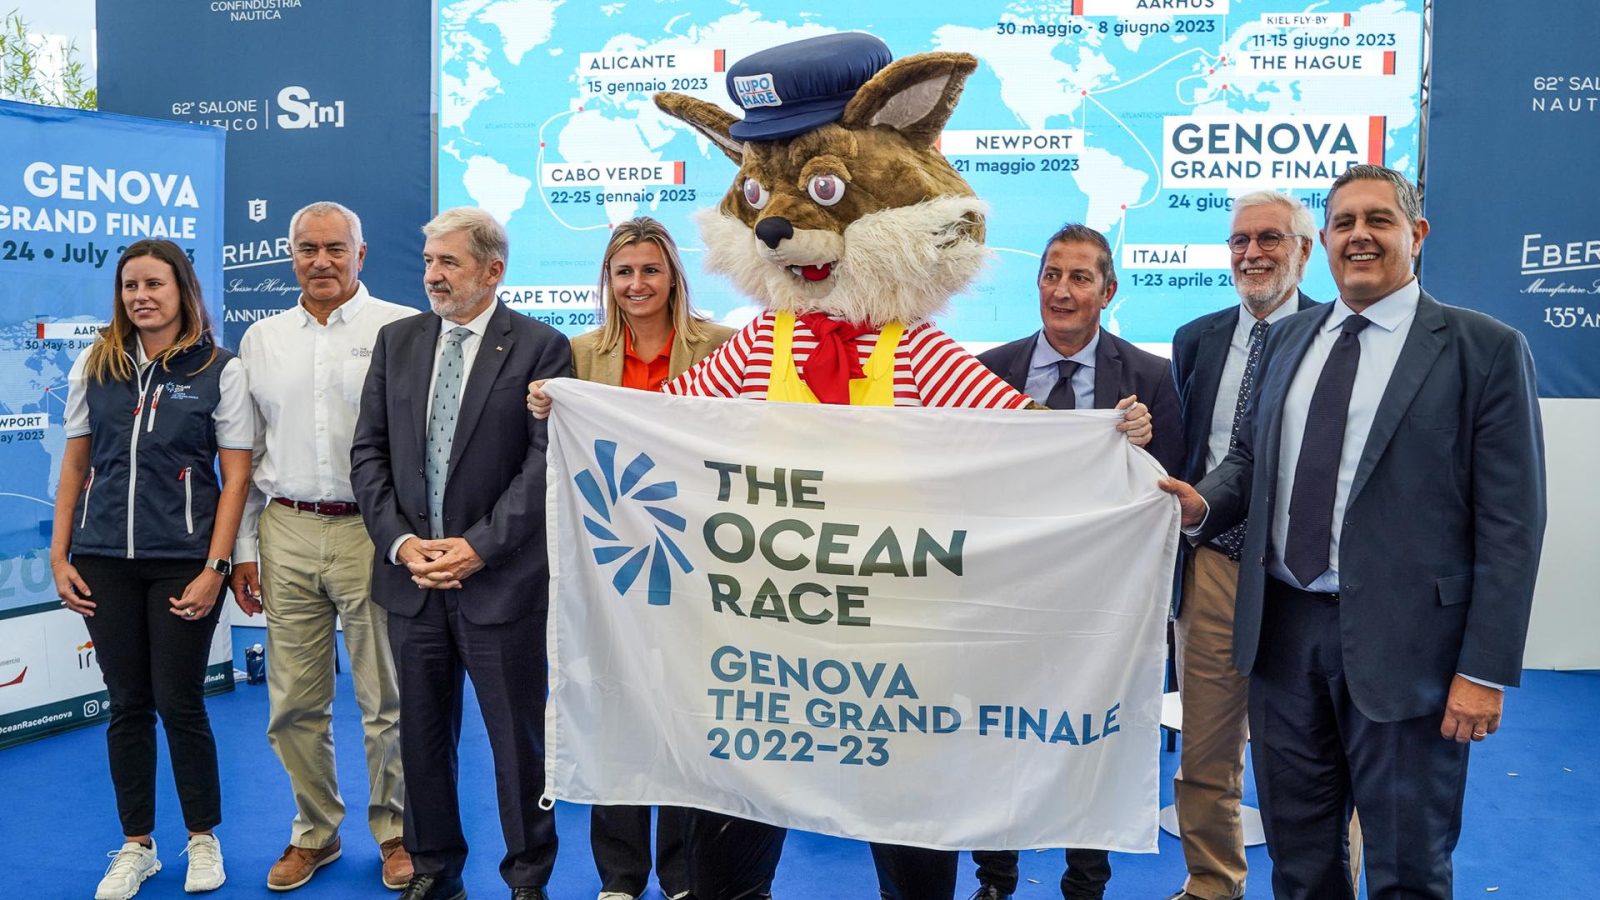 lupo di mare stringe la bandiera di the ocean race the grand finale di genova assieme a illustri personaggi genovesi